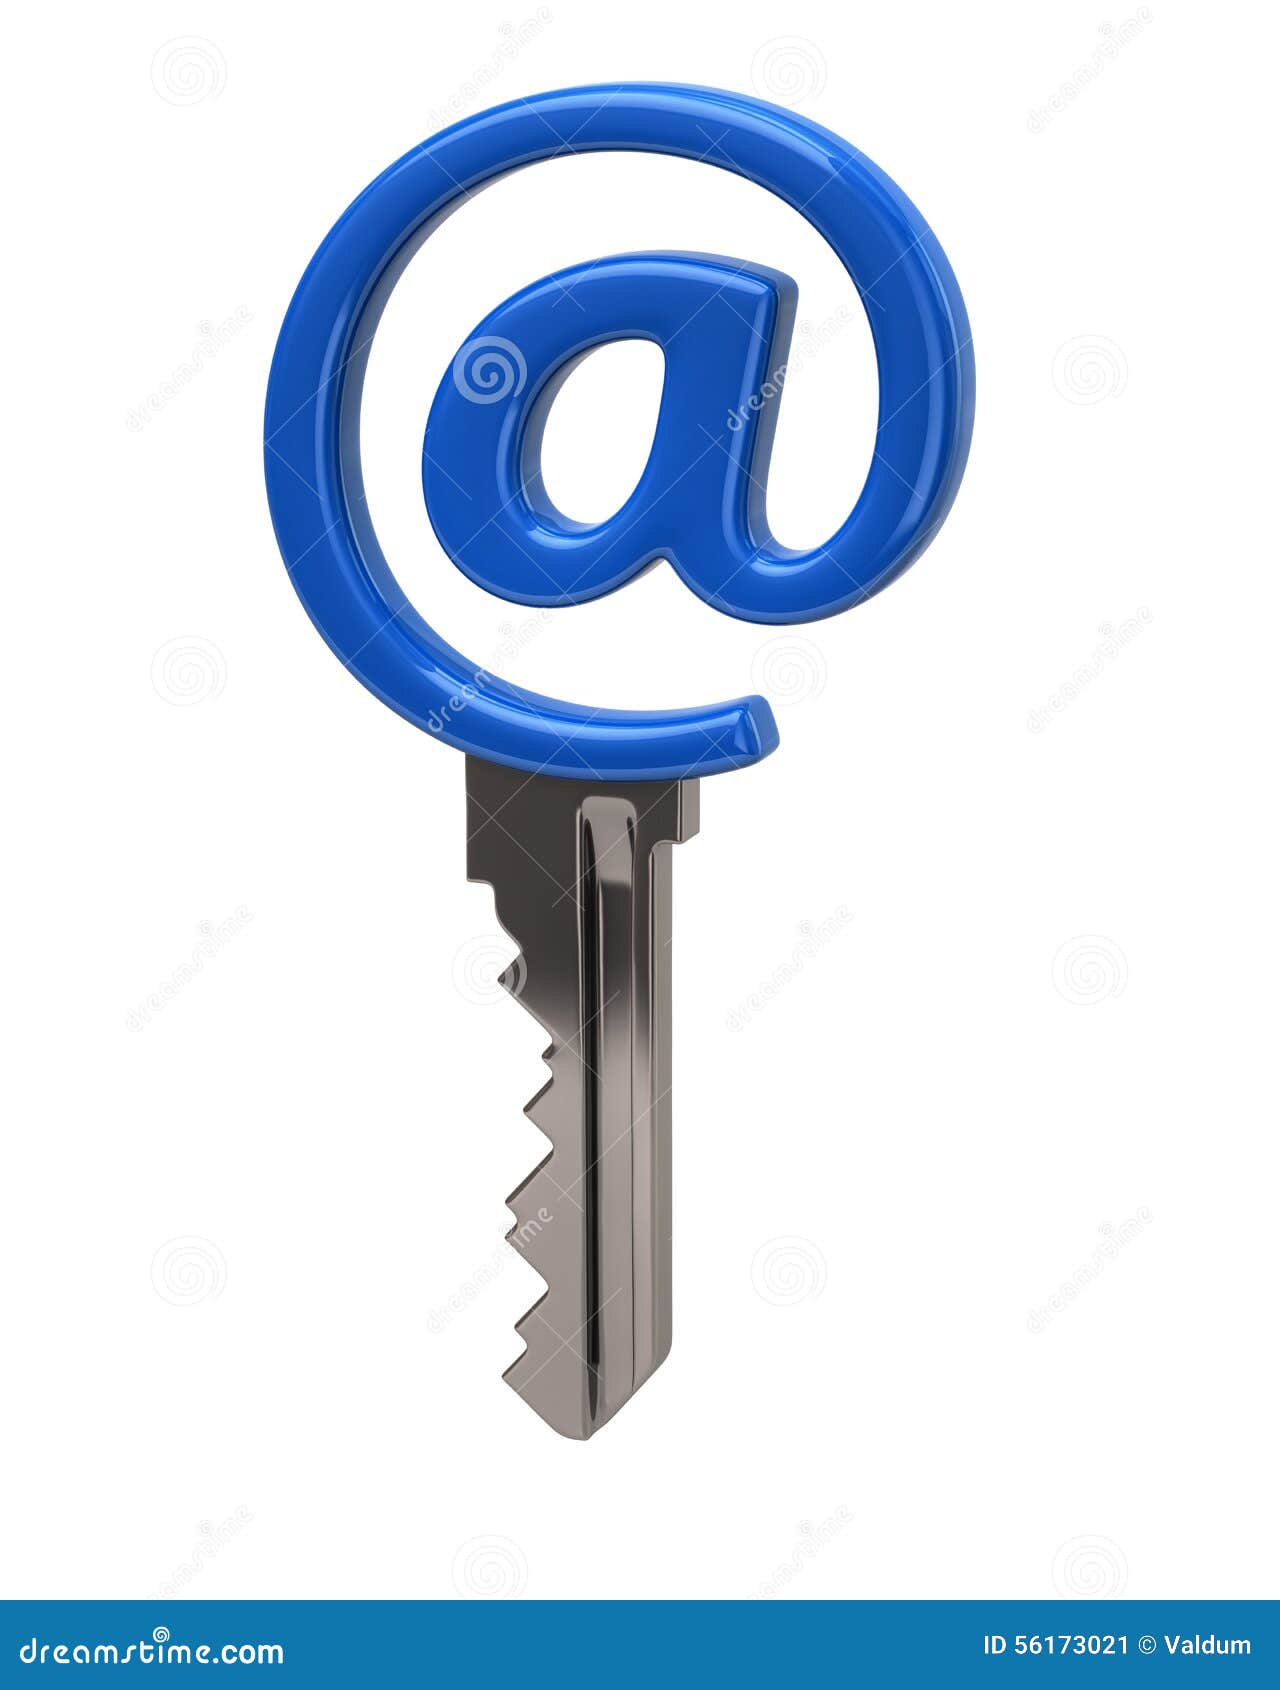 Key mail ru. Почтовый ключ. Ключ от почты. Ключик от почтового ящика. Ключ от почтового ящика крестом.